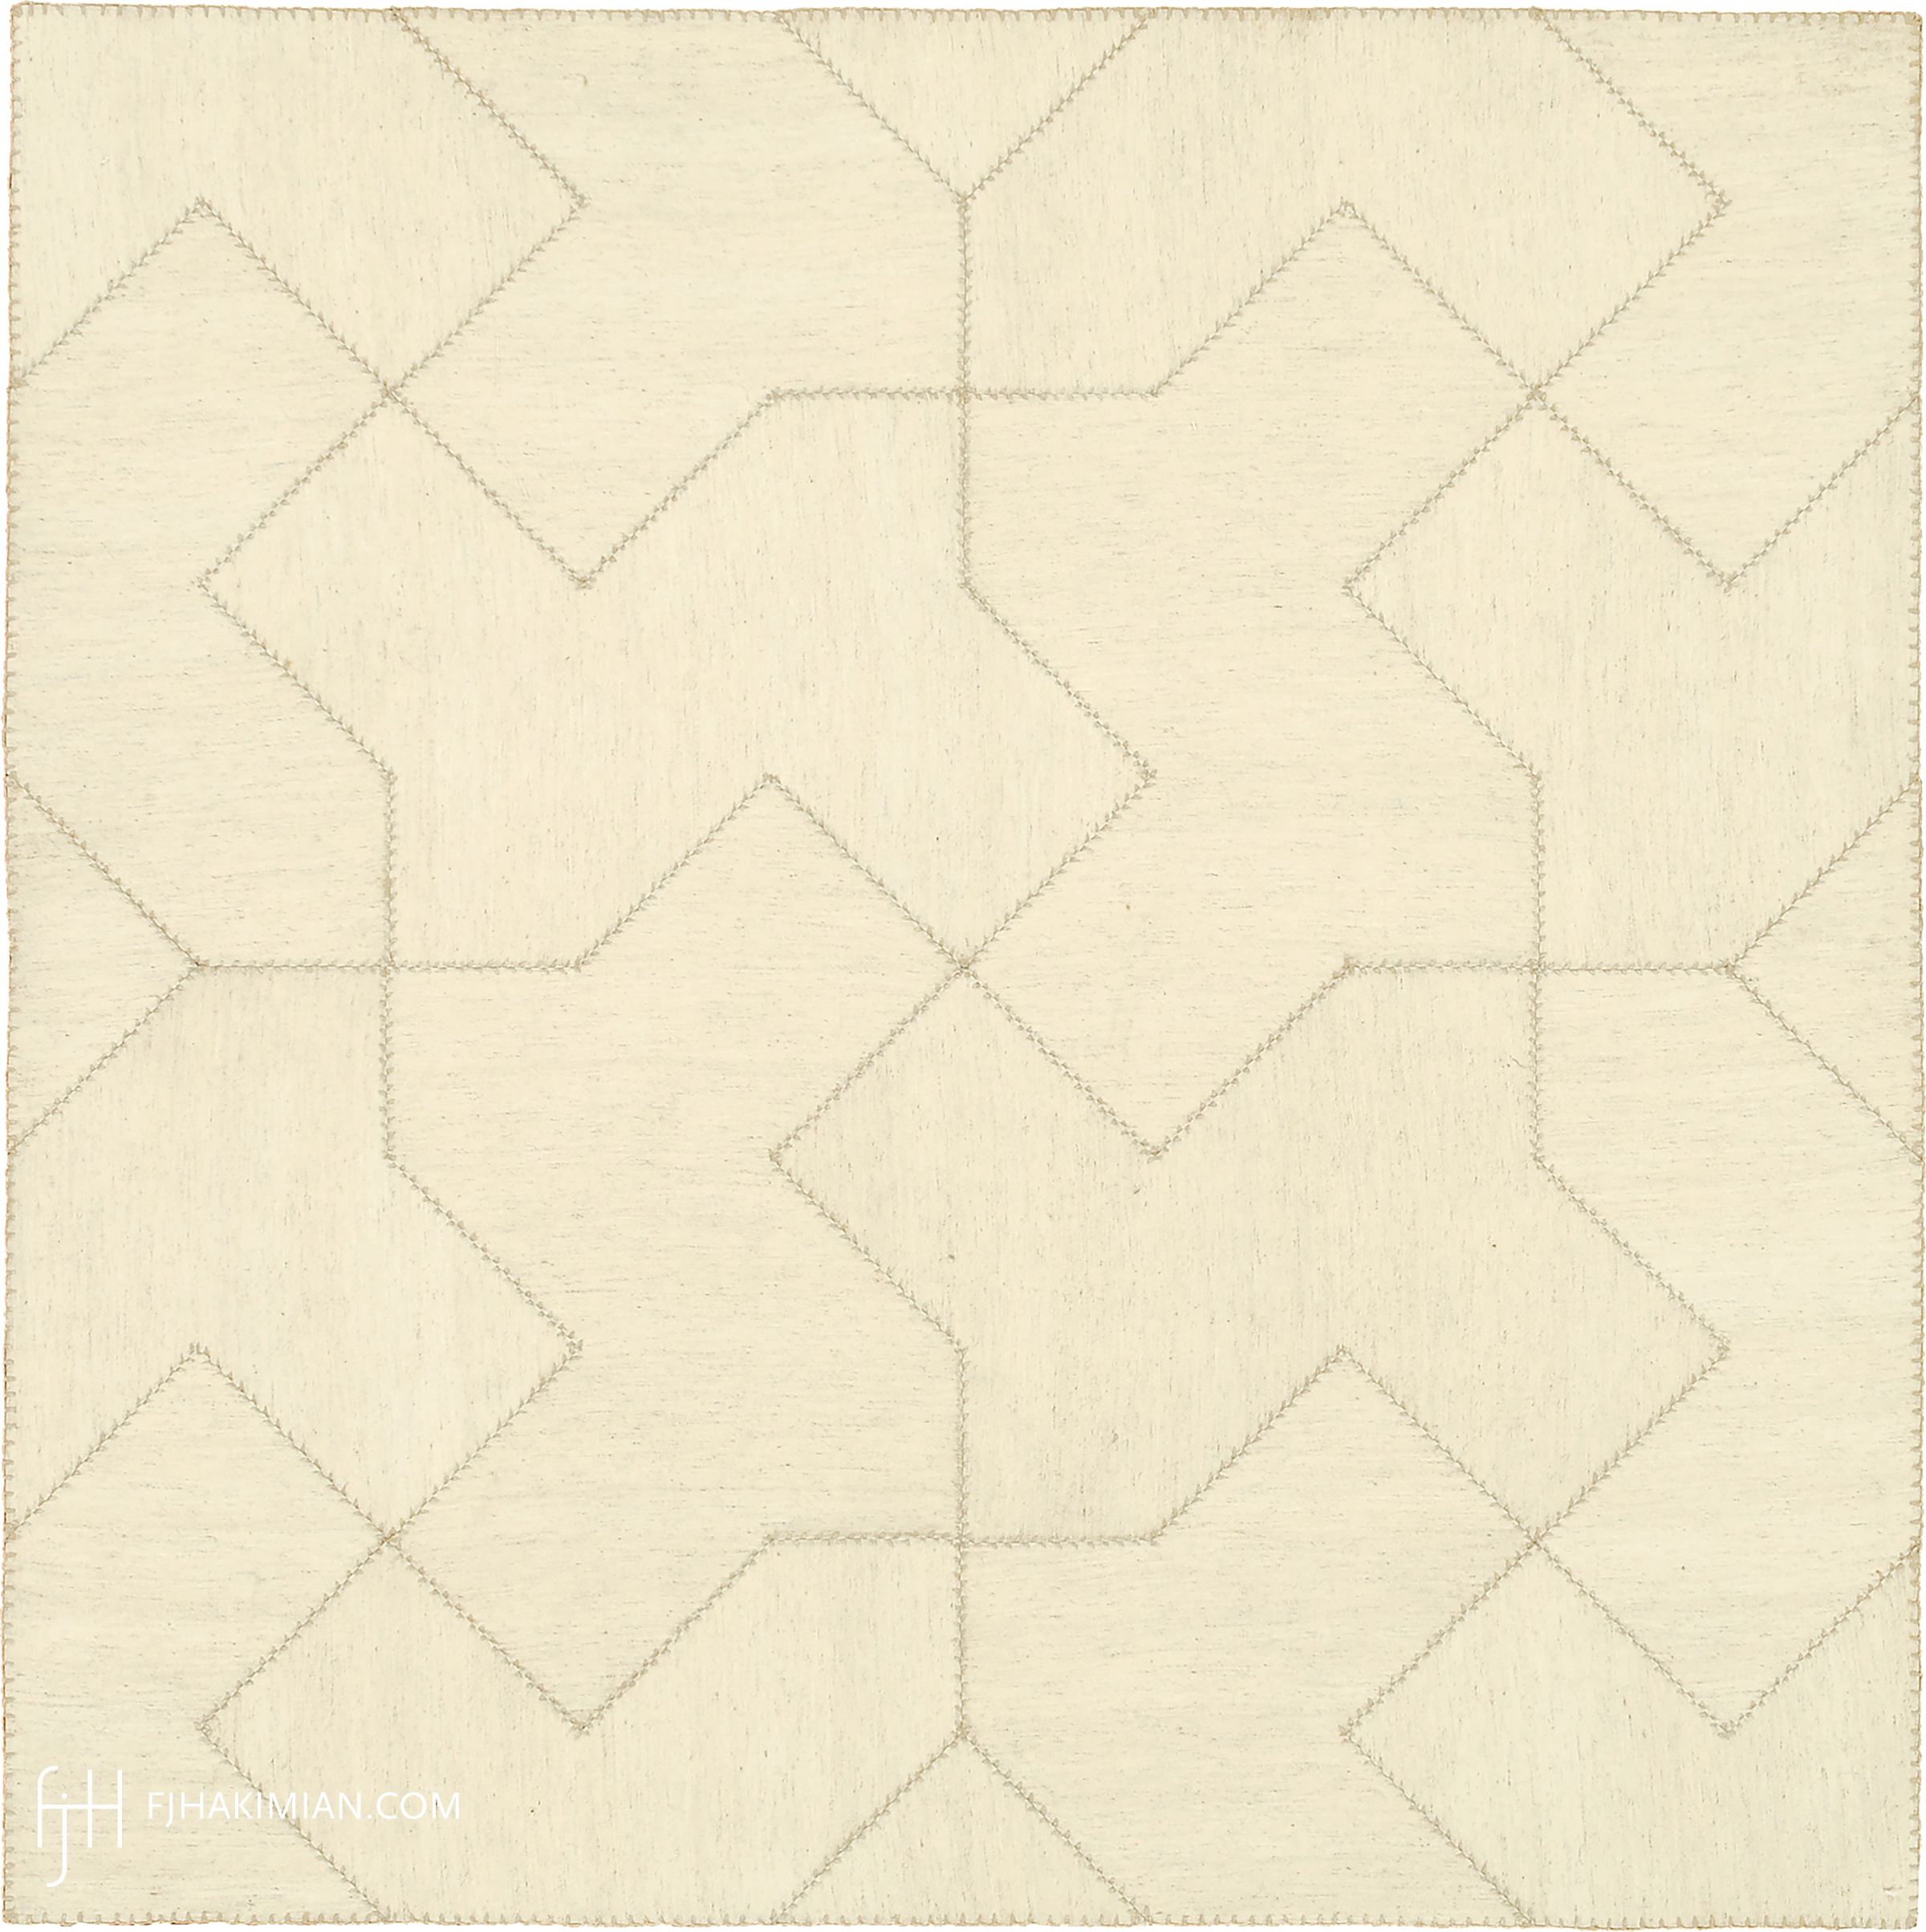 FJ Hakimian | 27482 | Custom Carpet